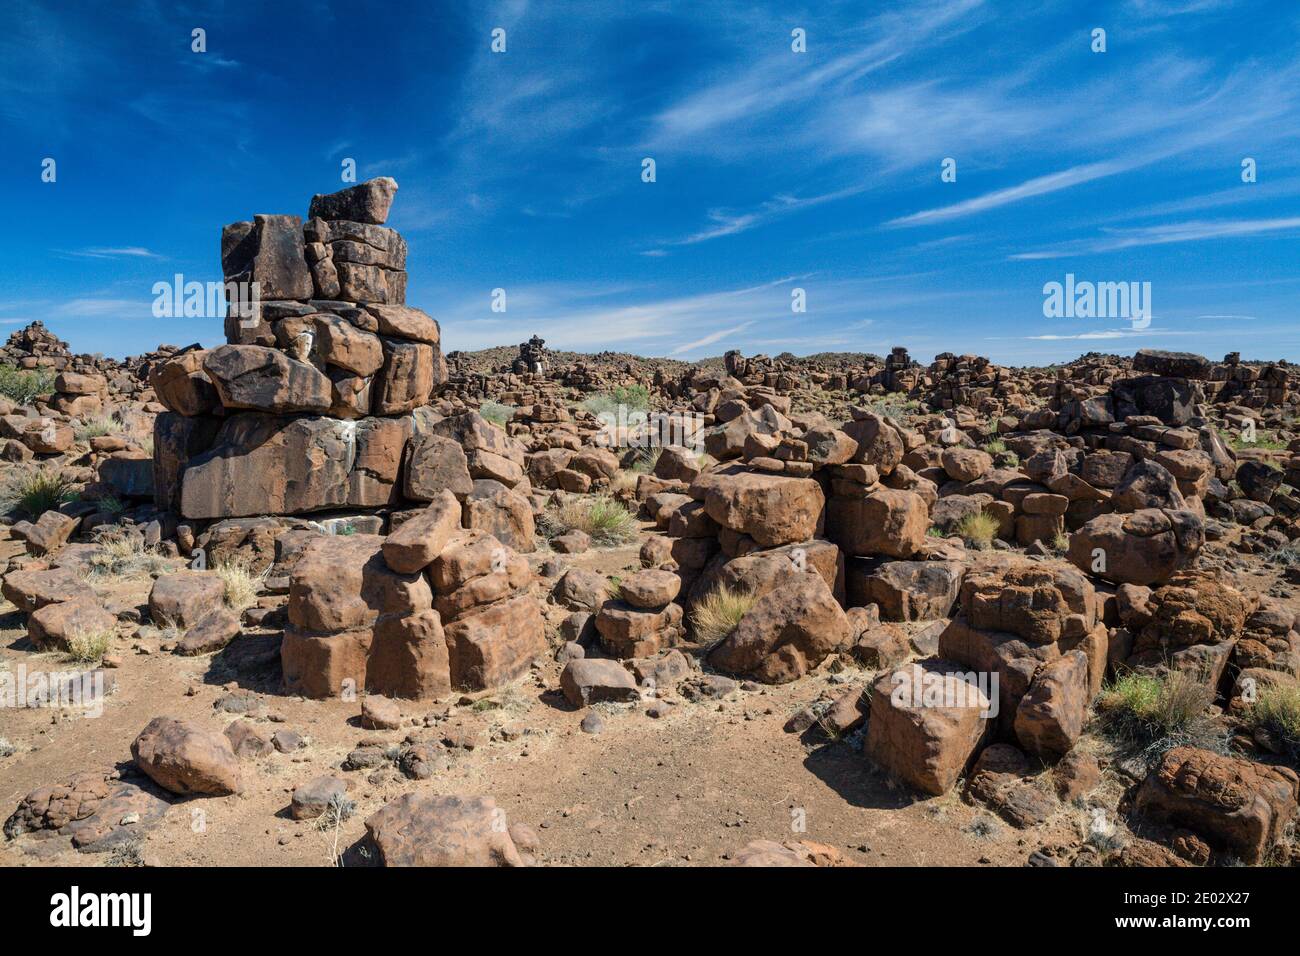 Rocas de Giants Playground, Keetmanshoop, Namibia Foto de stock